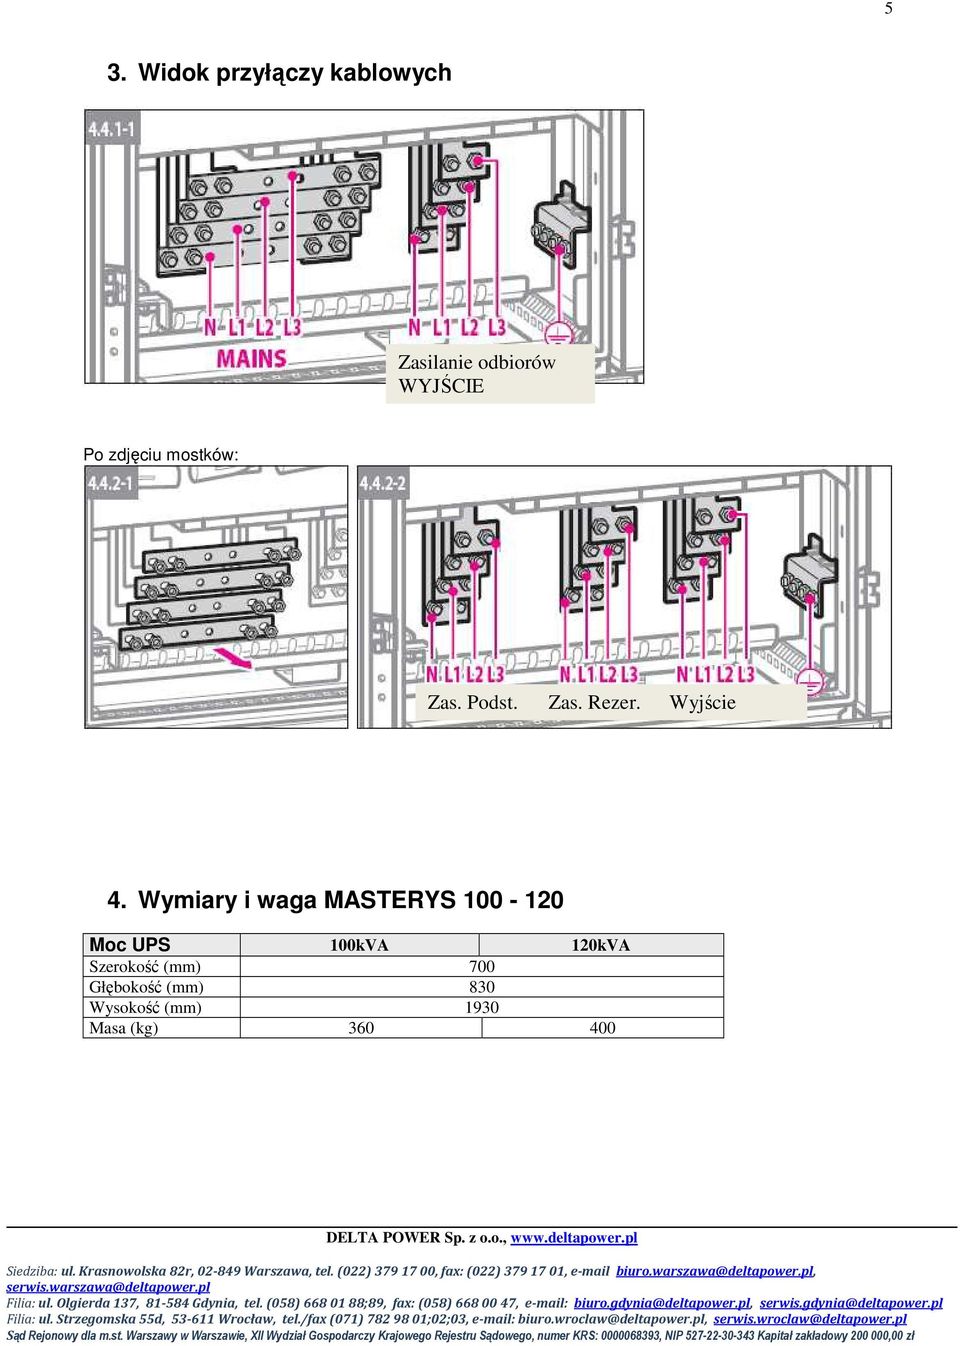 Wymiary i waga MASTERYS 100-120 Moc UPS 100kVA 120kVA